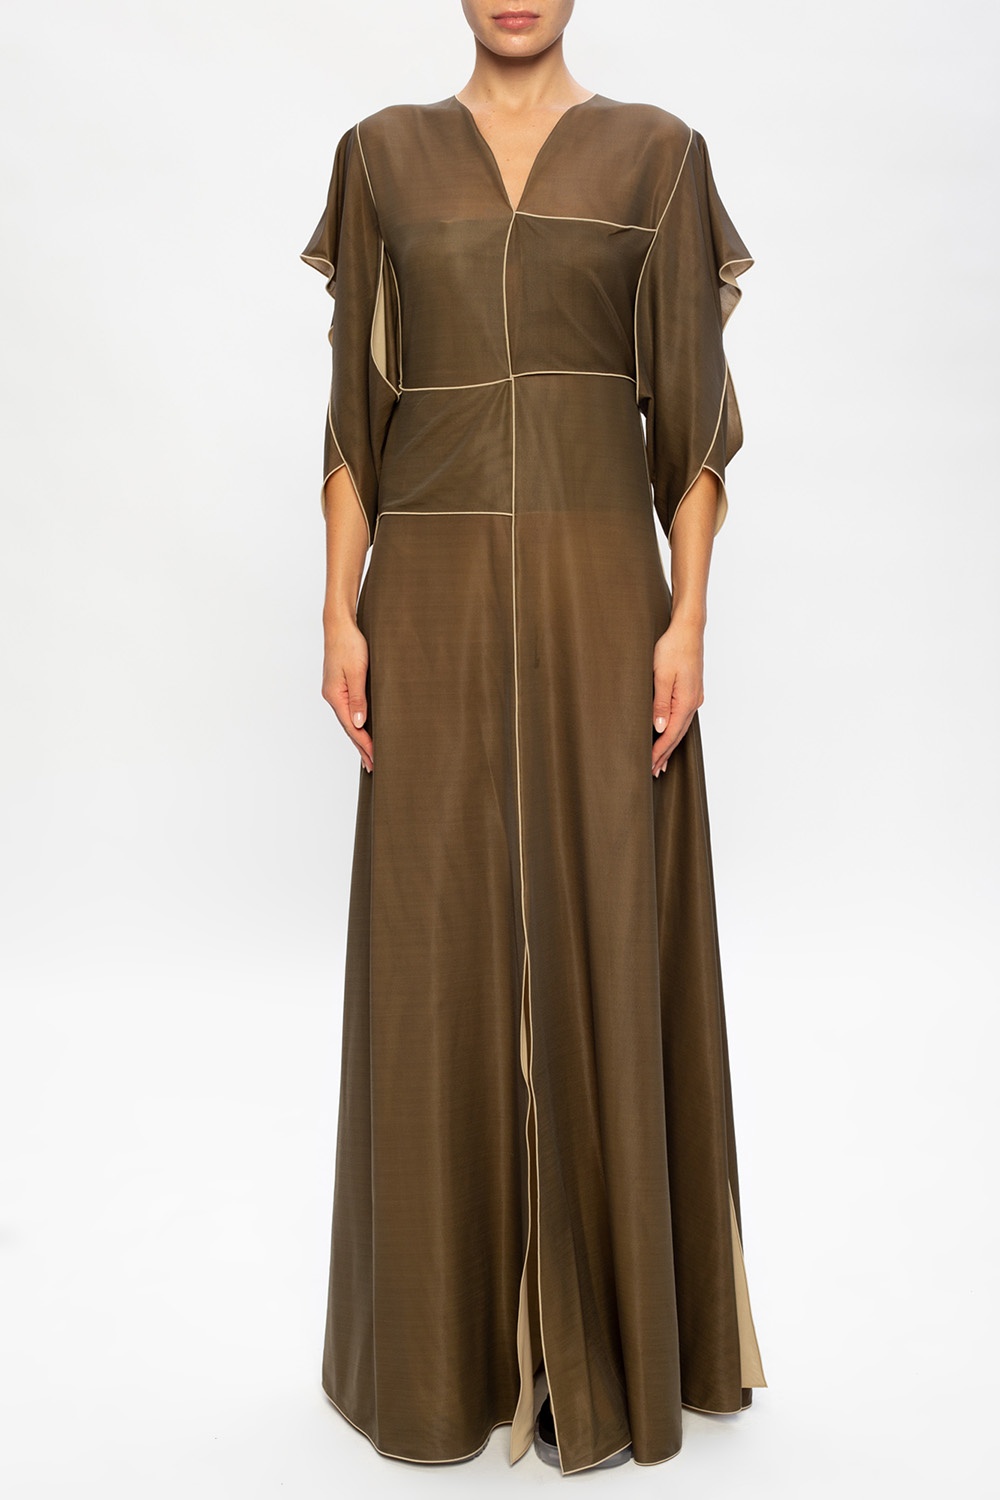 Bottega Veneta ‘Intrecciato’ motif dress